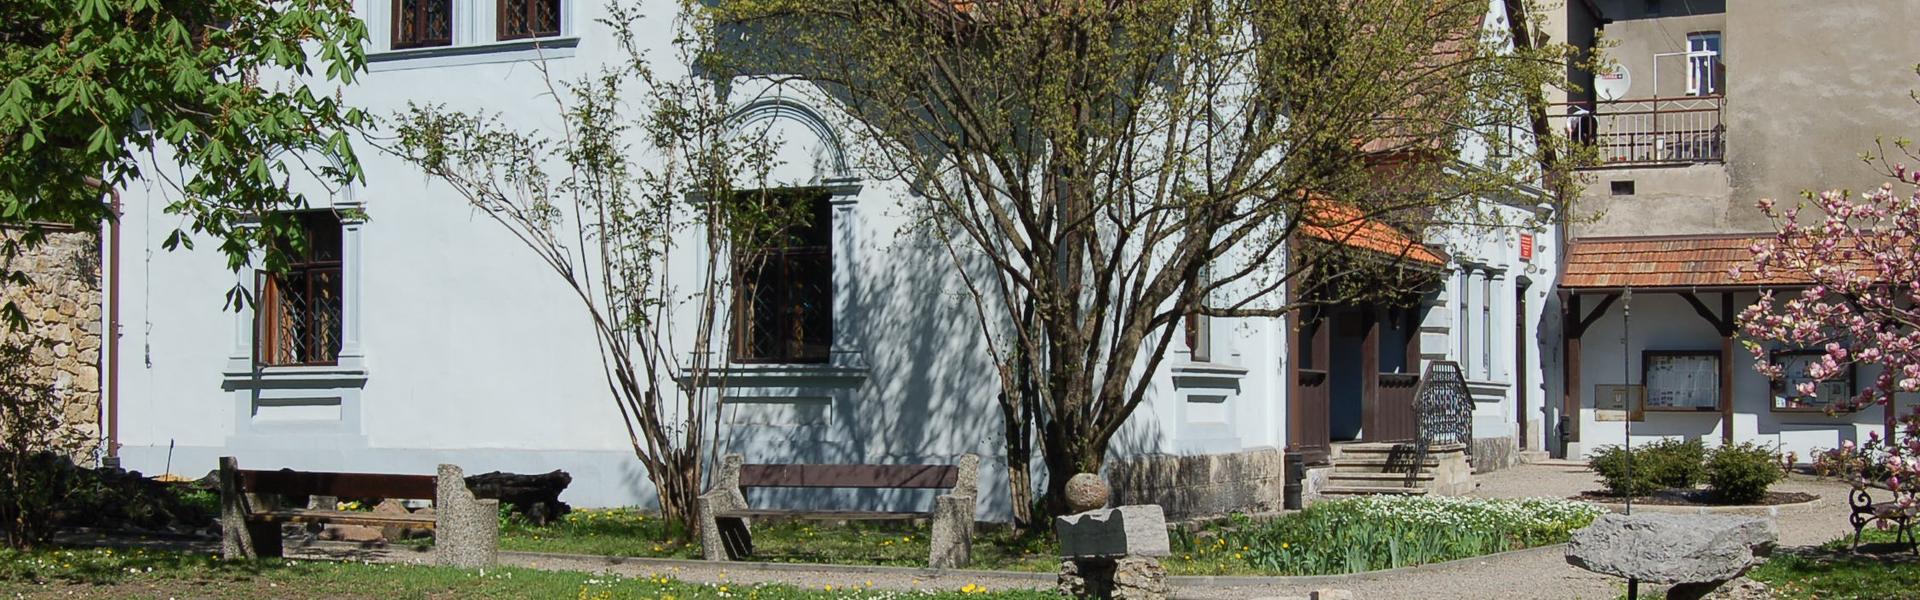 Zdjęcie przedstawia fragment ogrodu znajdujacego się przy Domu Urbańczyka w Chrzanowie.